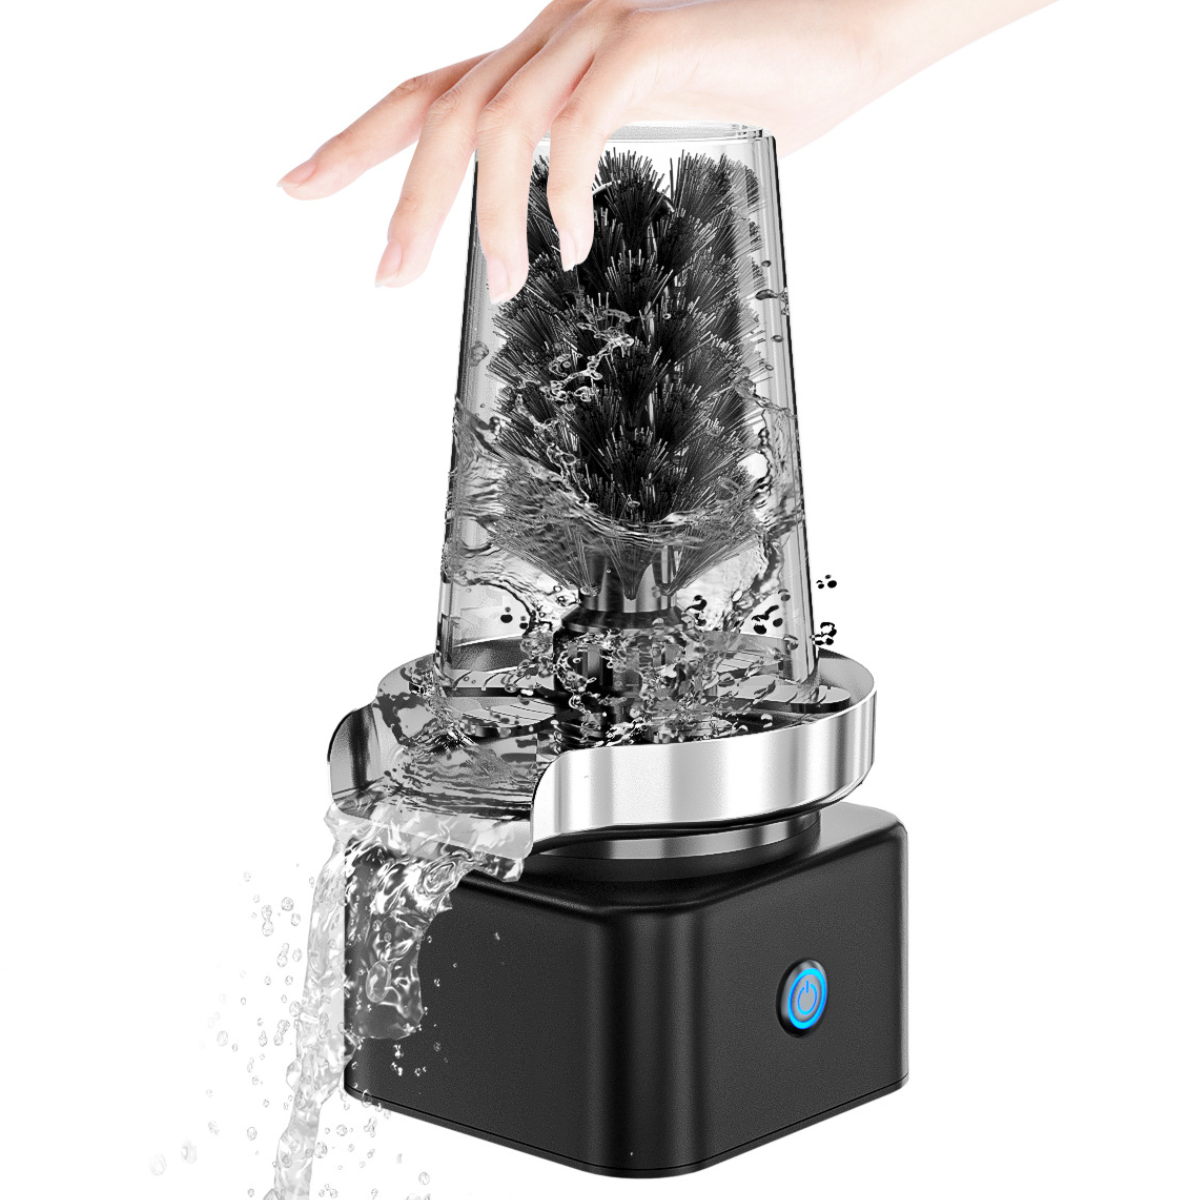 UWOT Tassenwaschmaschine: Automatische Reinigung, Weiß und Nylonborsten, Drehen, Tiefenreinigung Drücken Reinigungsbürste